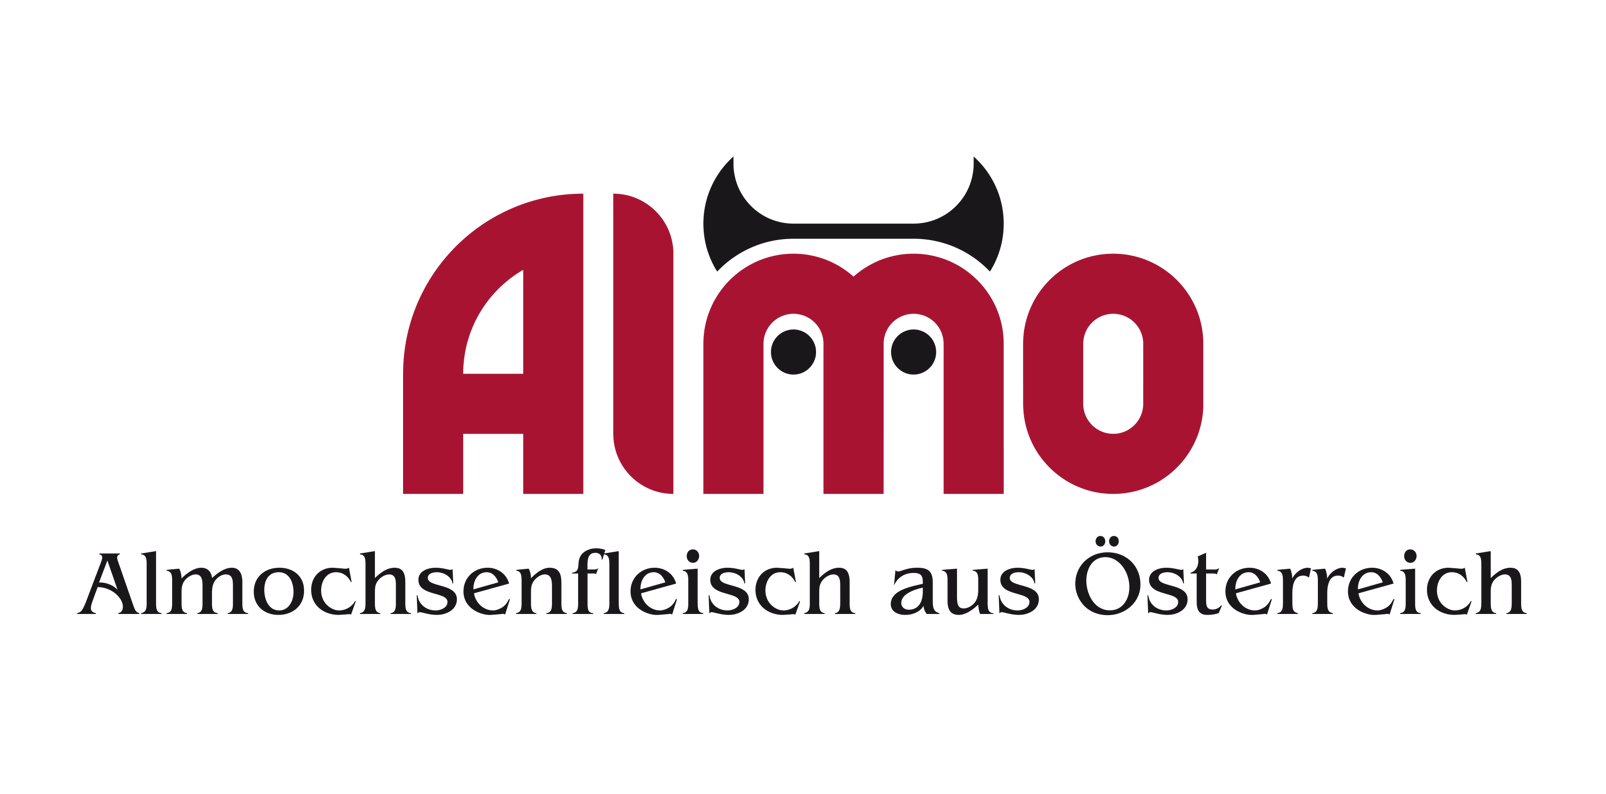 Almochsenfleisch Österreich, Almochse, 